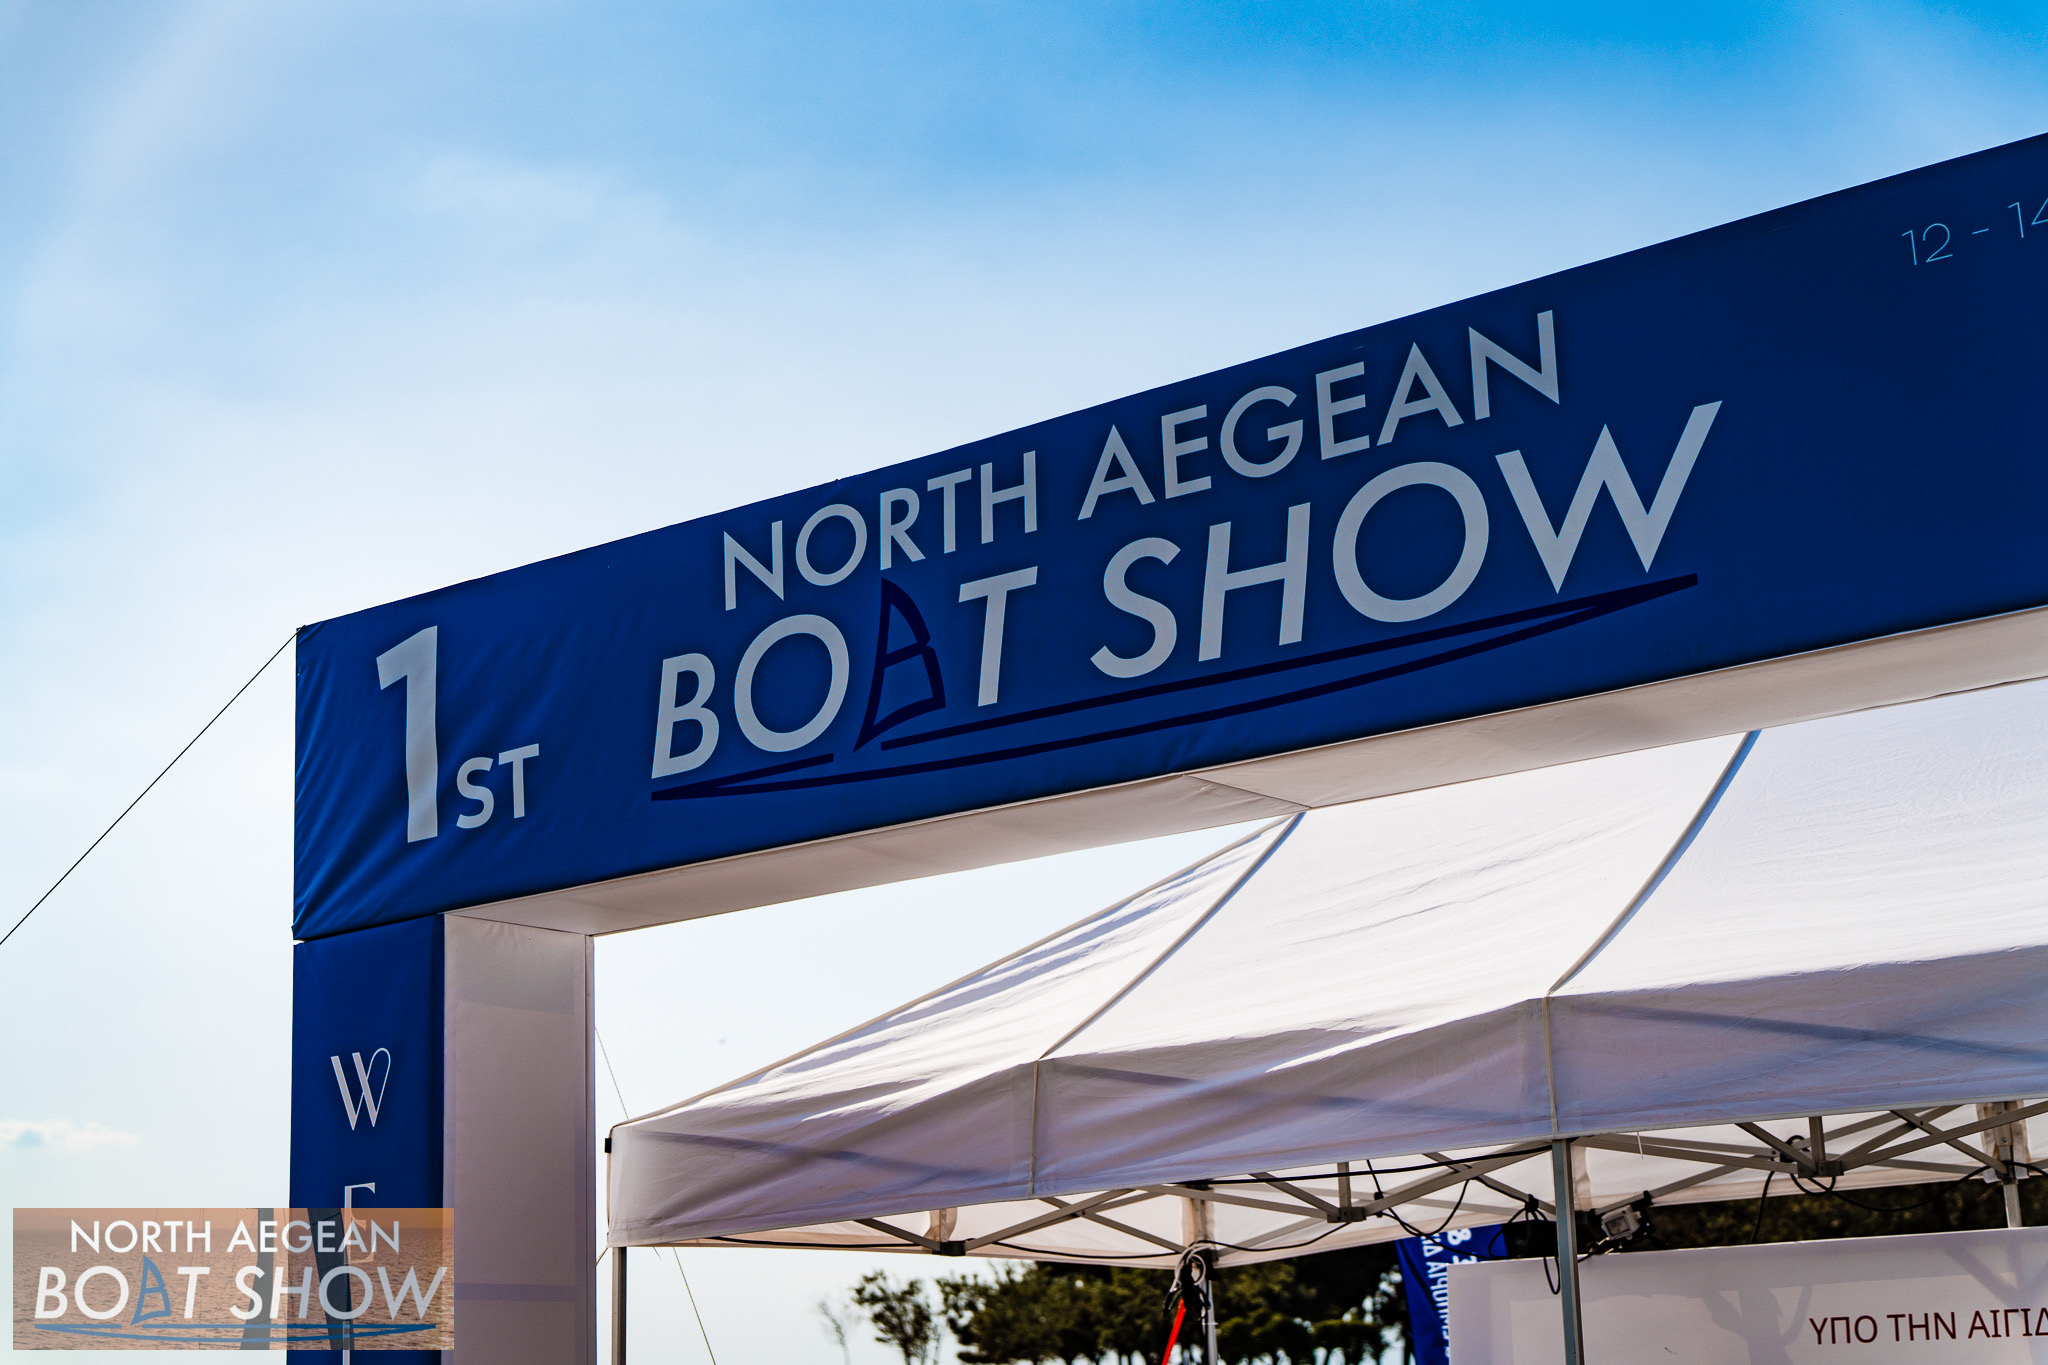 1st North Aegean Boat Show: Check!